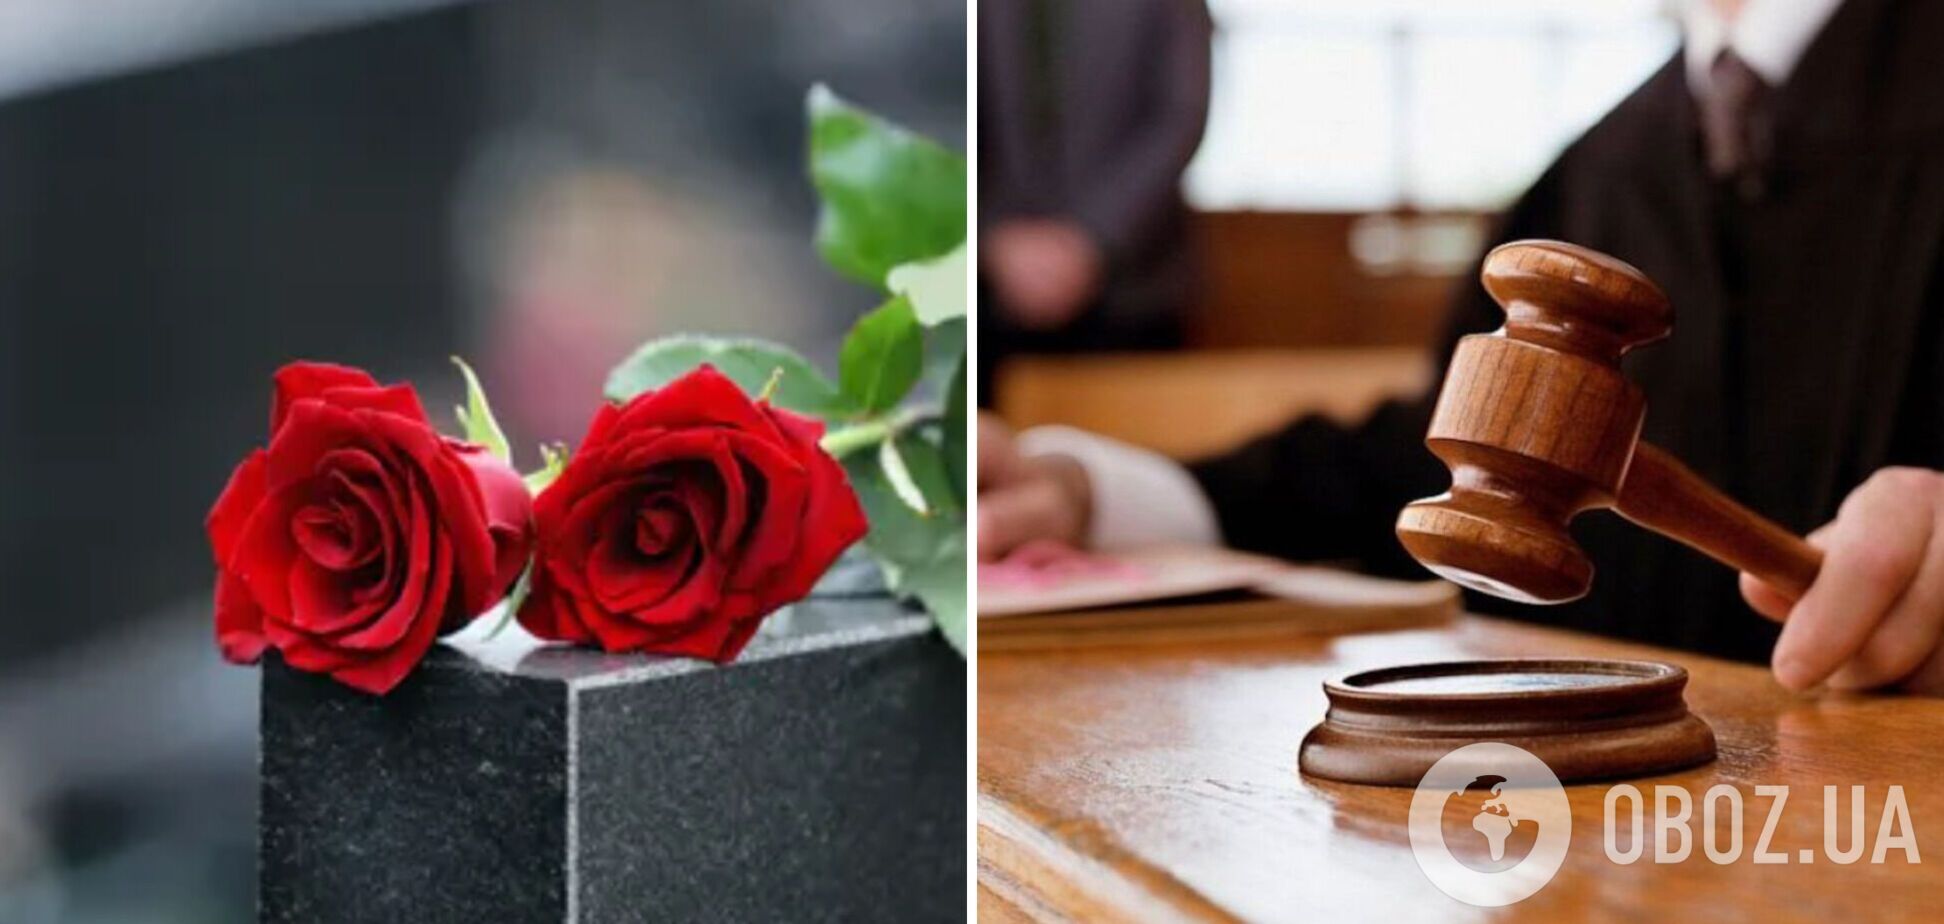 На Рівненщині свекруха вкрала 20 троянд із могили військового, аби подарувати їх невістці на день народження: суд покарав жінку 